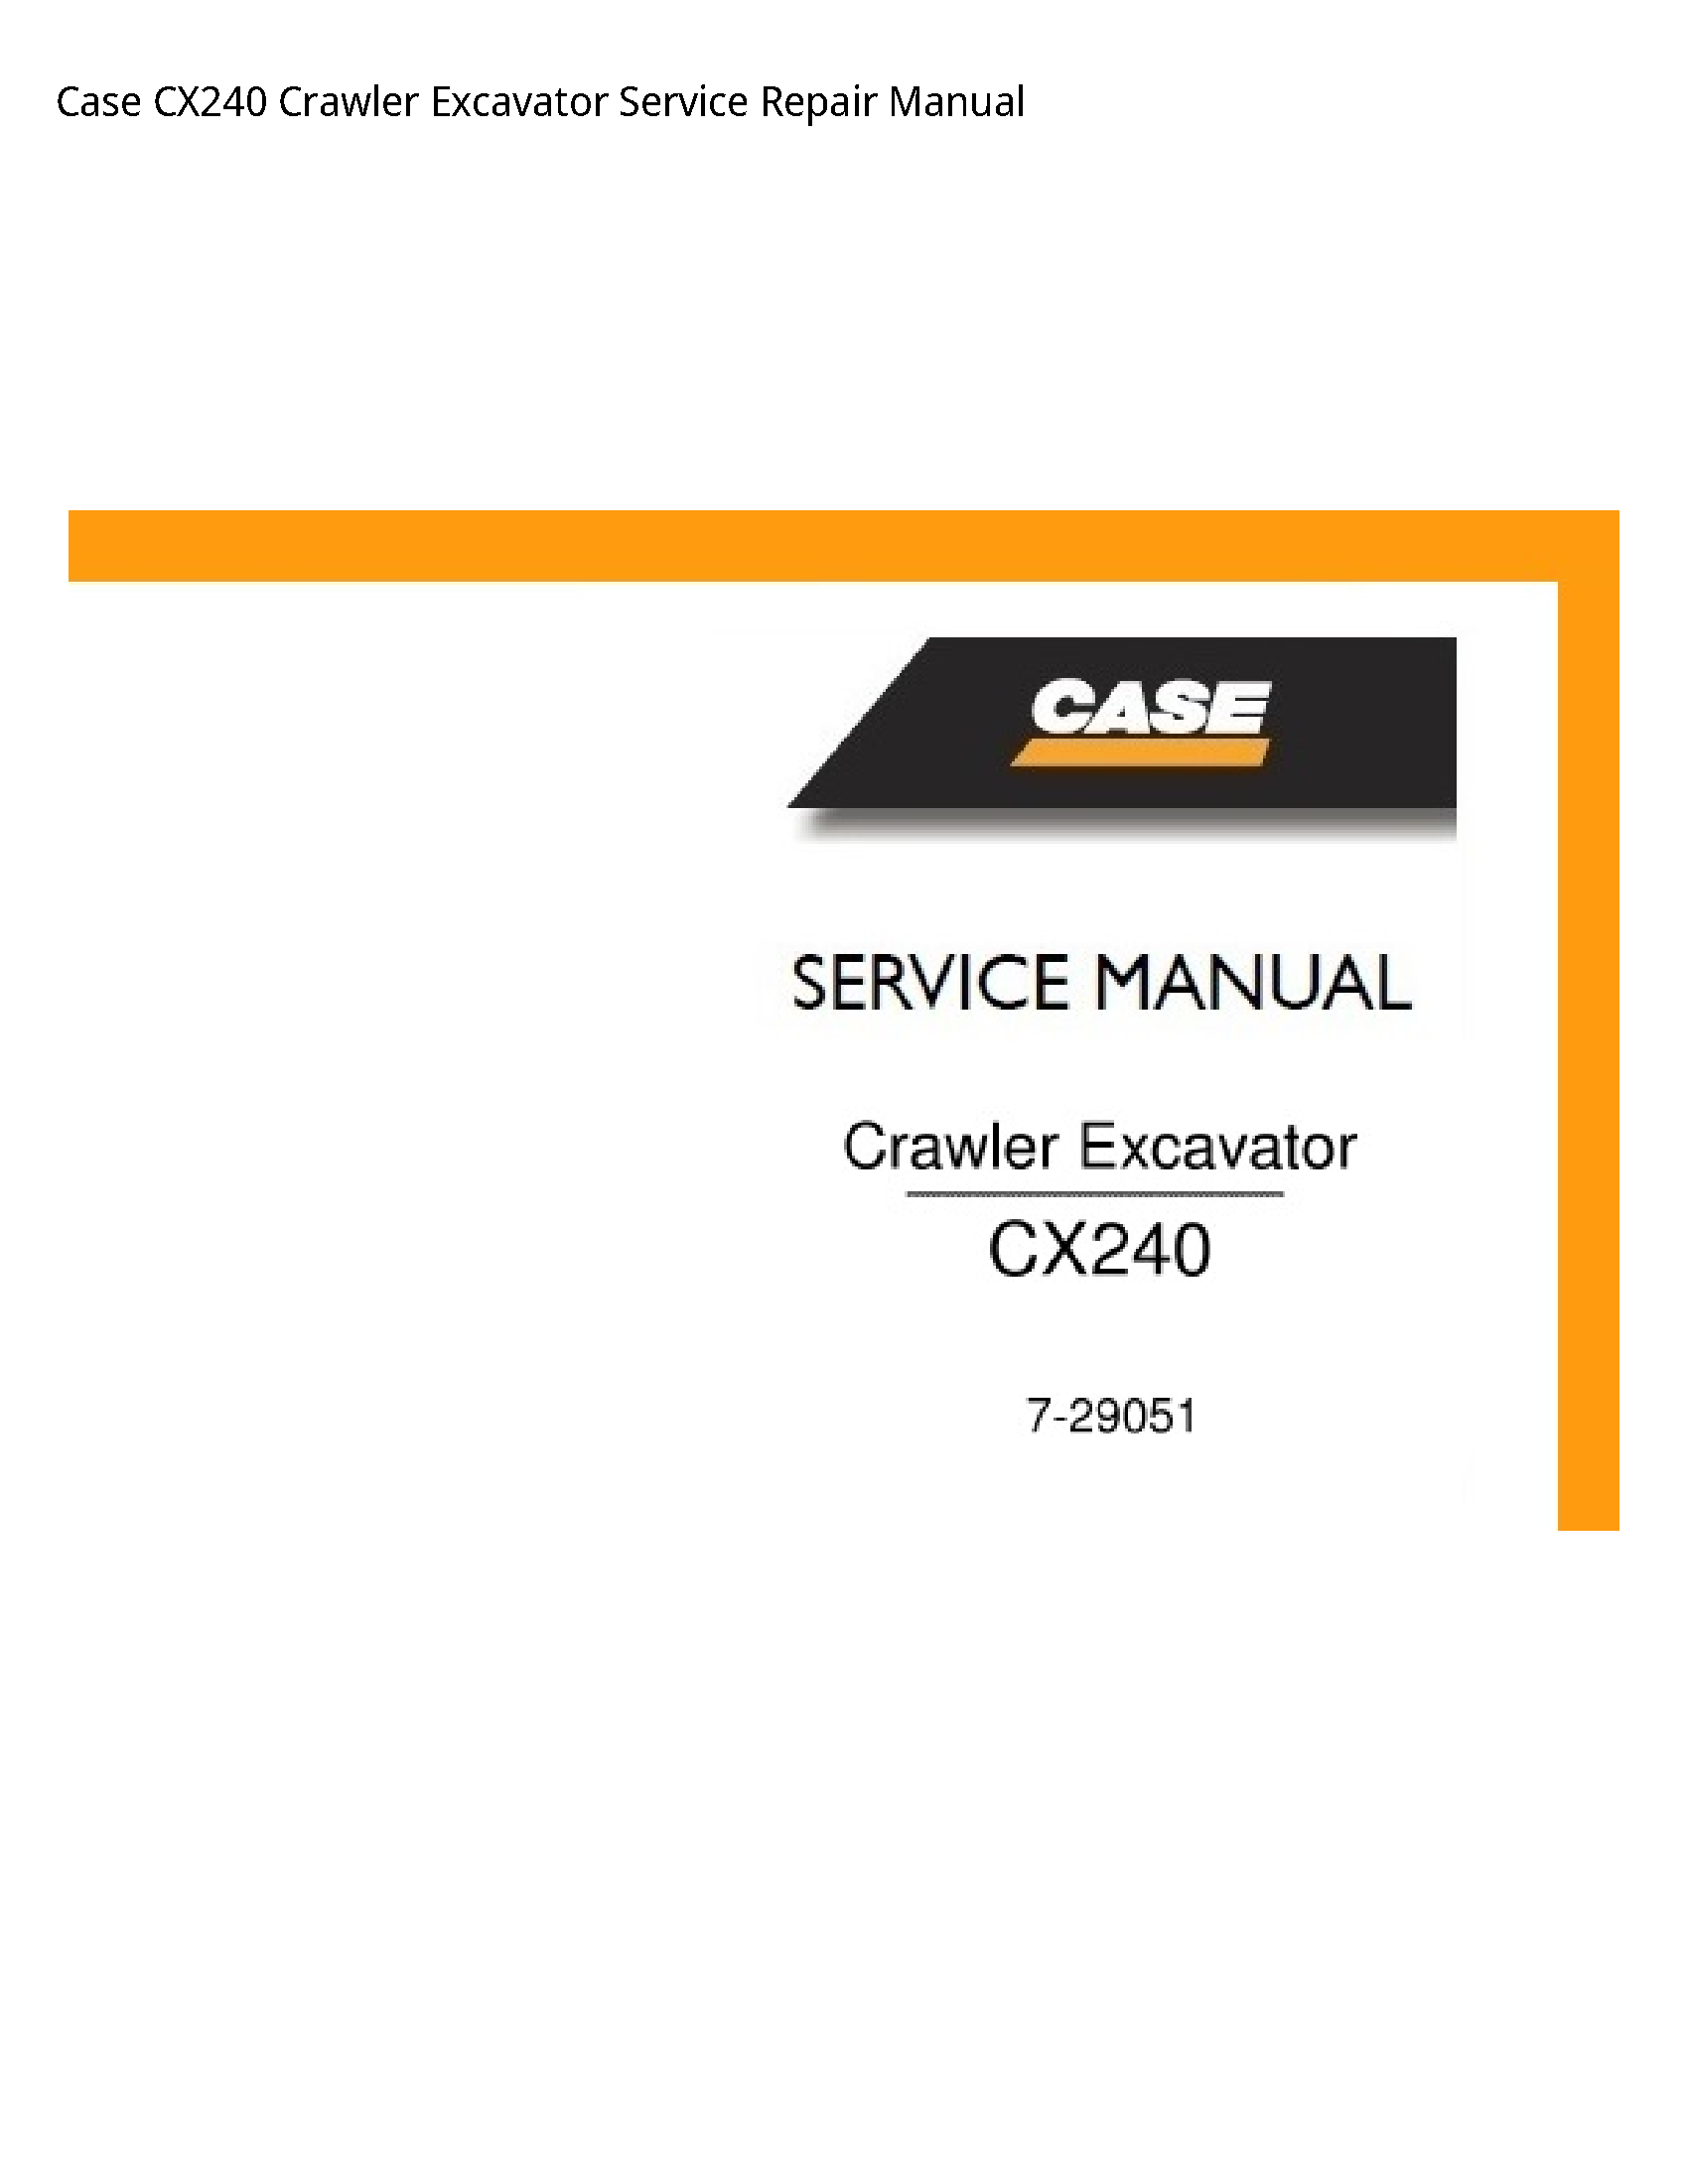 Case/Case IH CX240 Crawler Excavator manual